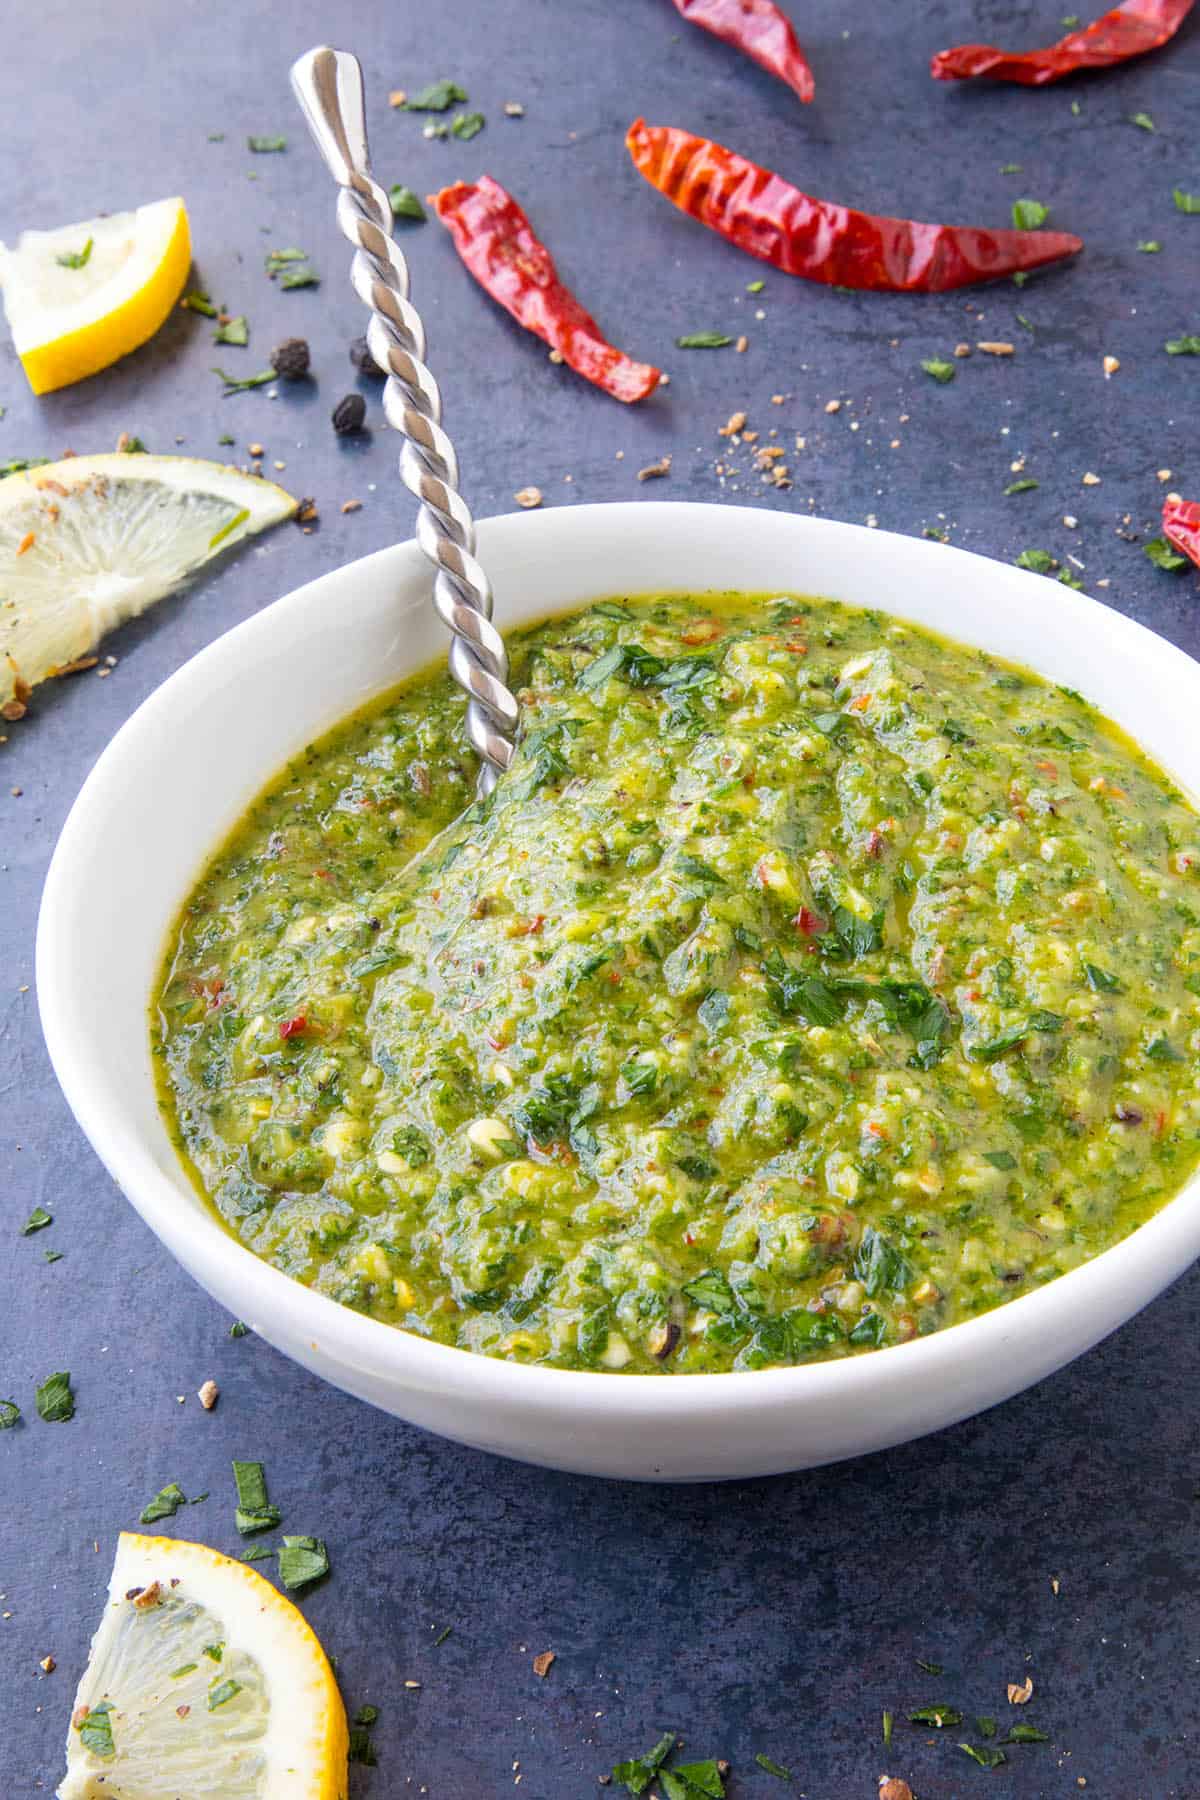 Zhug - Recipe (Yemenite Green Hot Sauce)